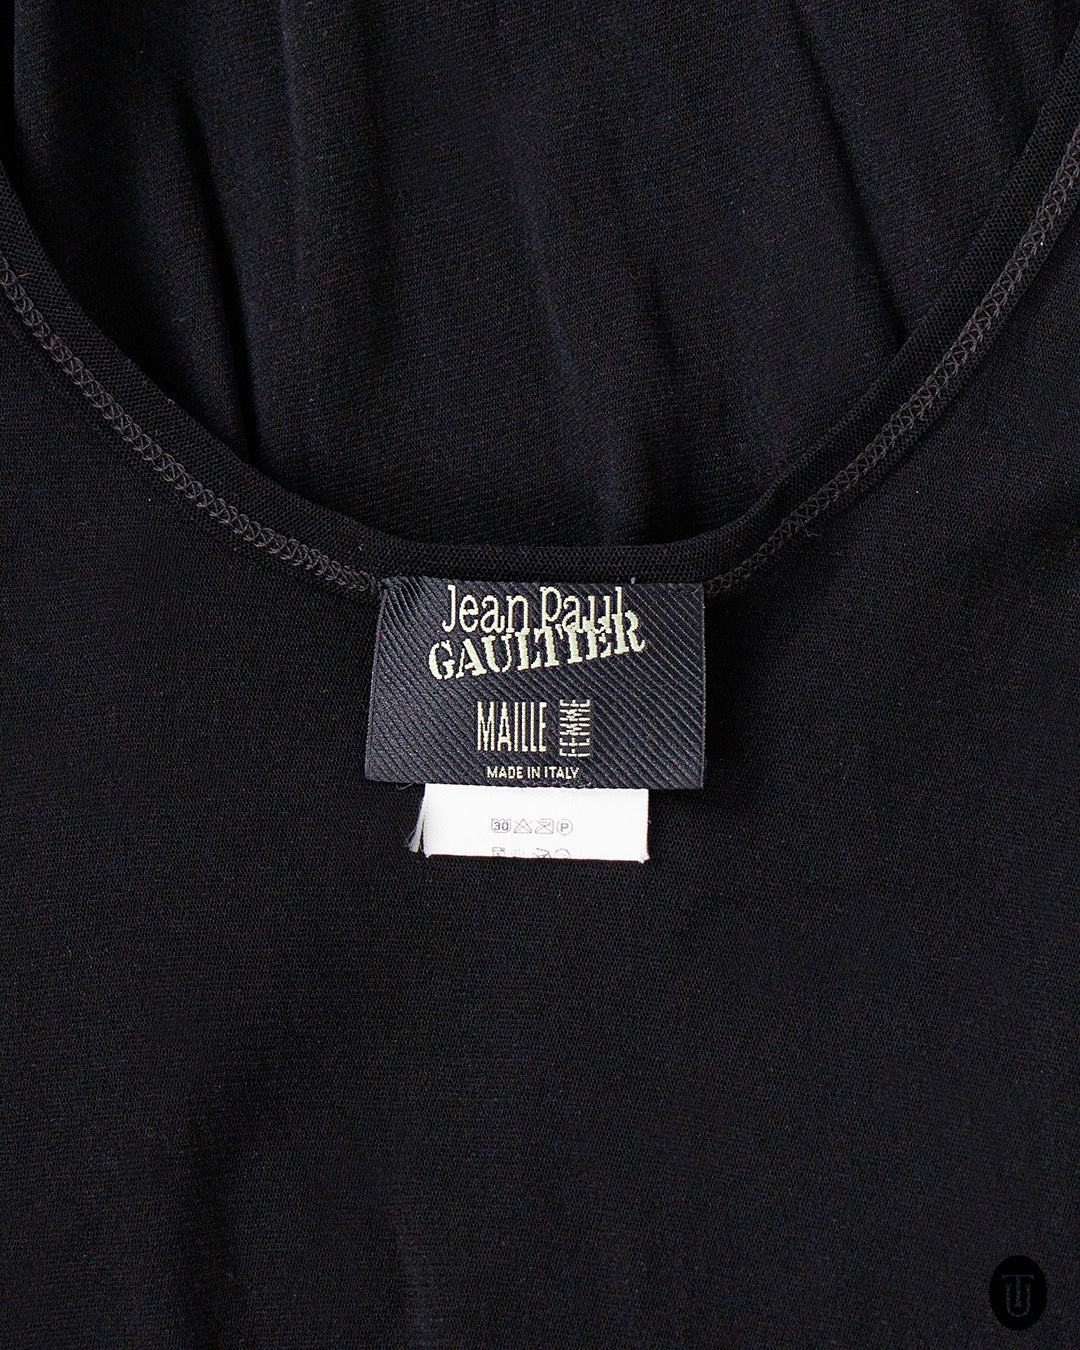 1990s Jean Paul Gaultier Sheer Black Jersey Dress S M